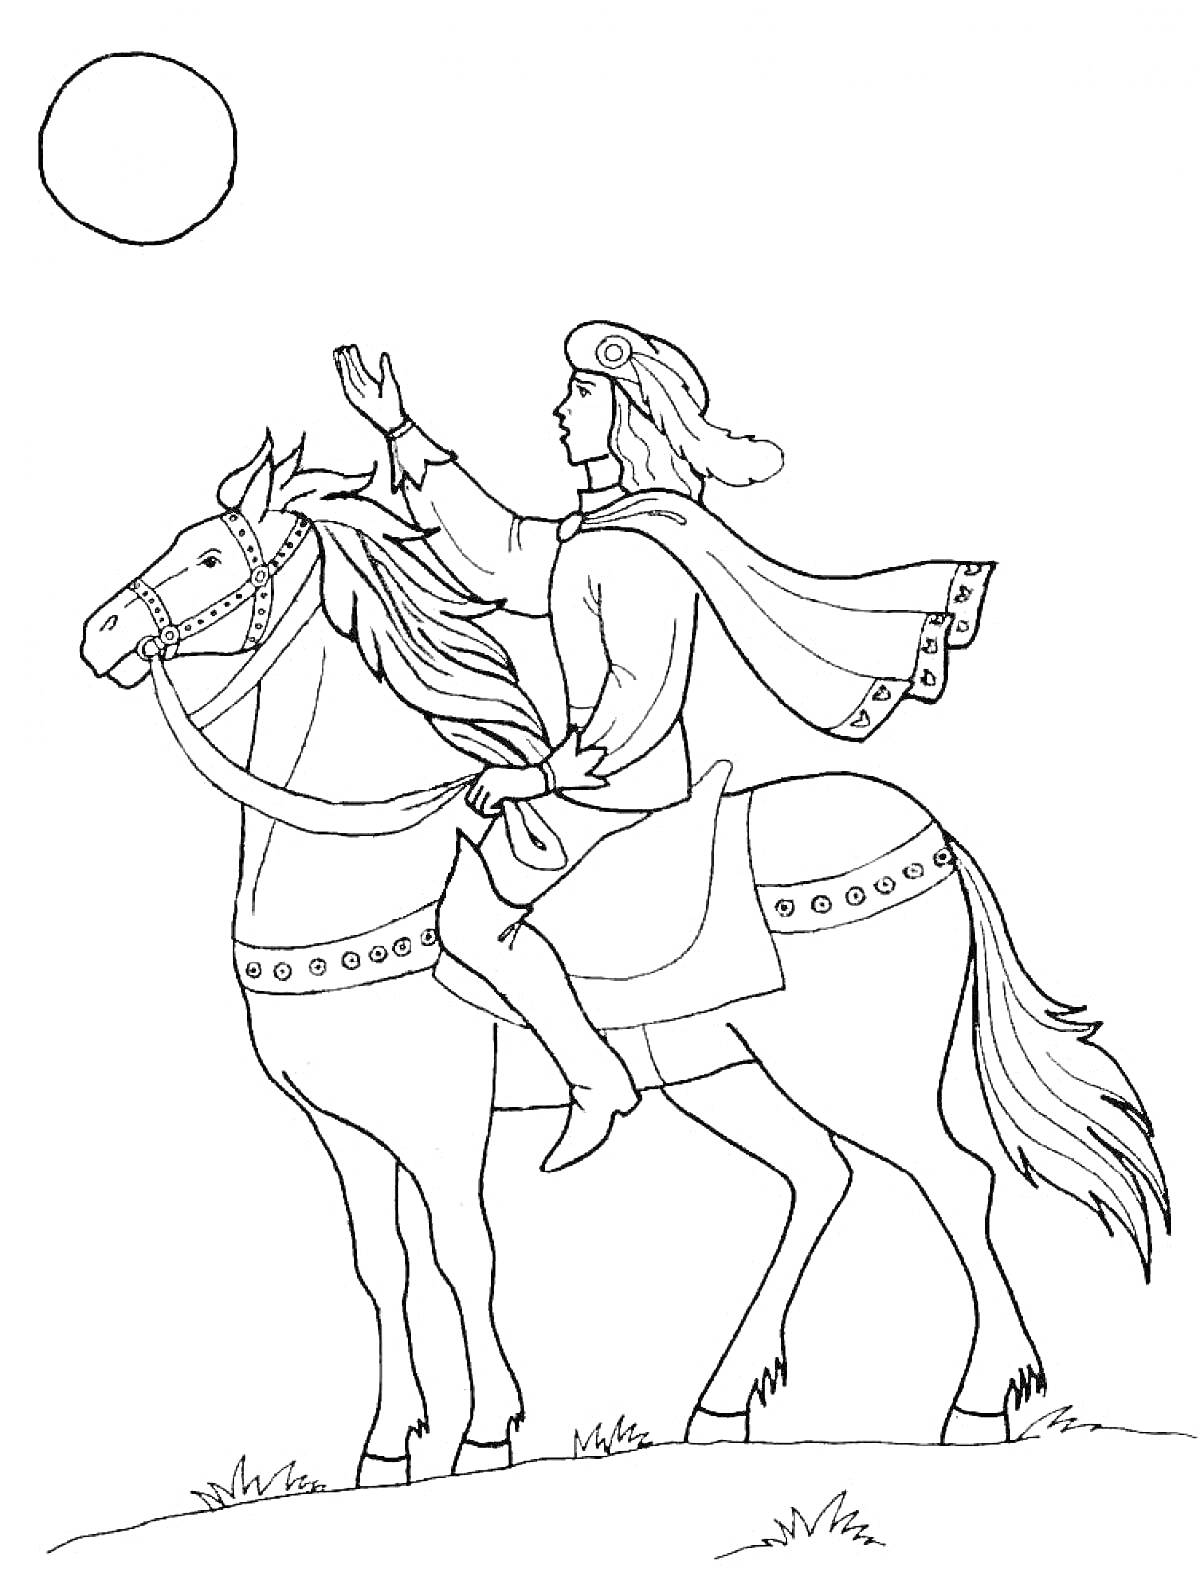 Всадник на коне с поднятой рукой и солнцем на небе